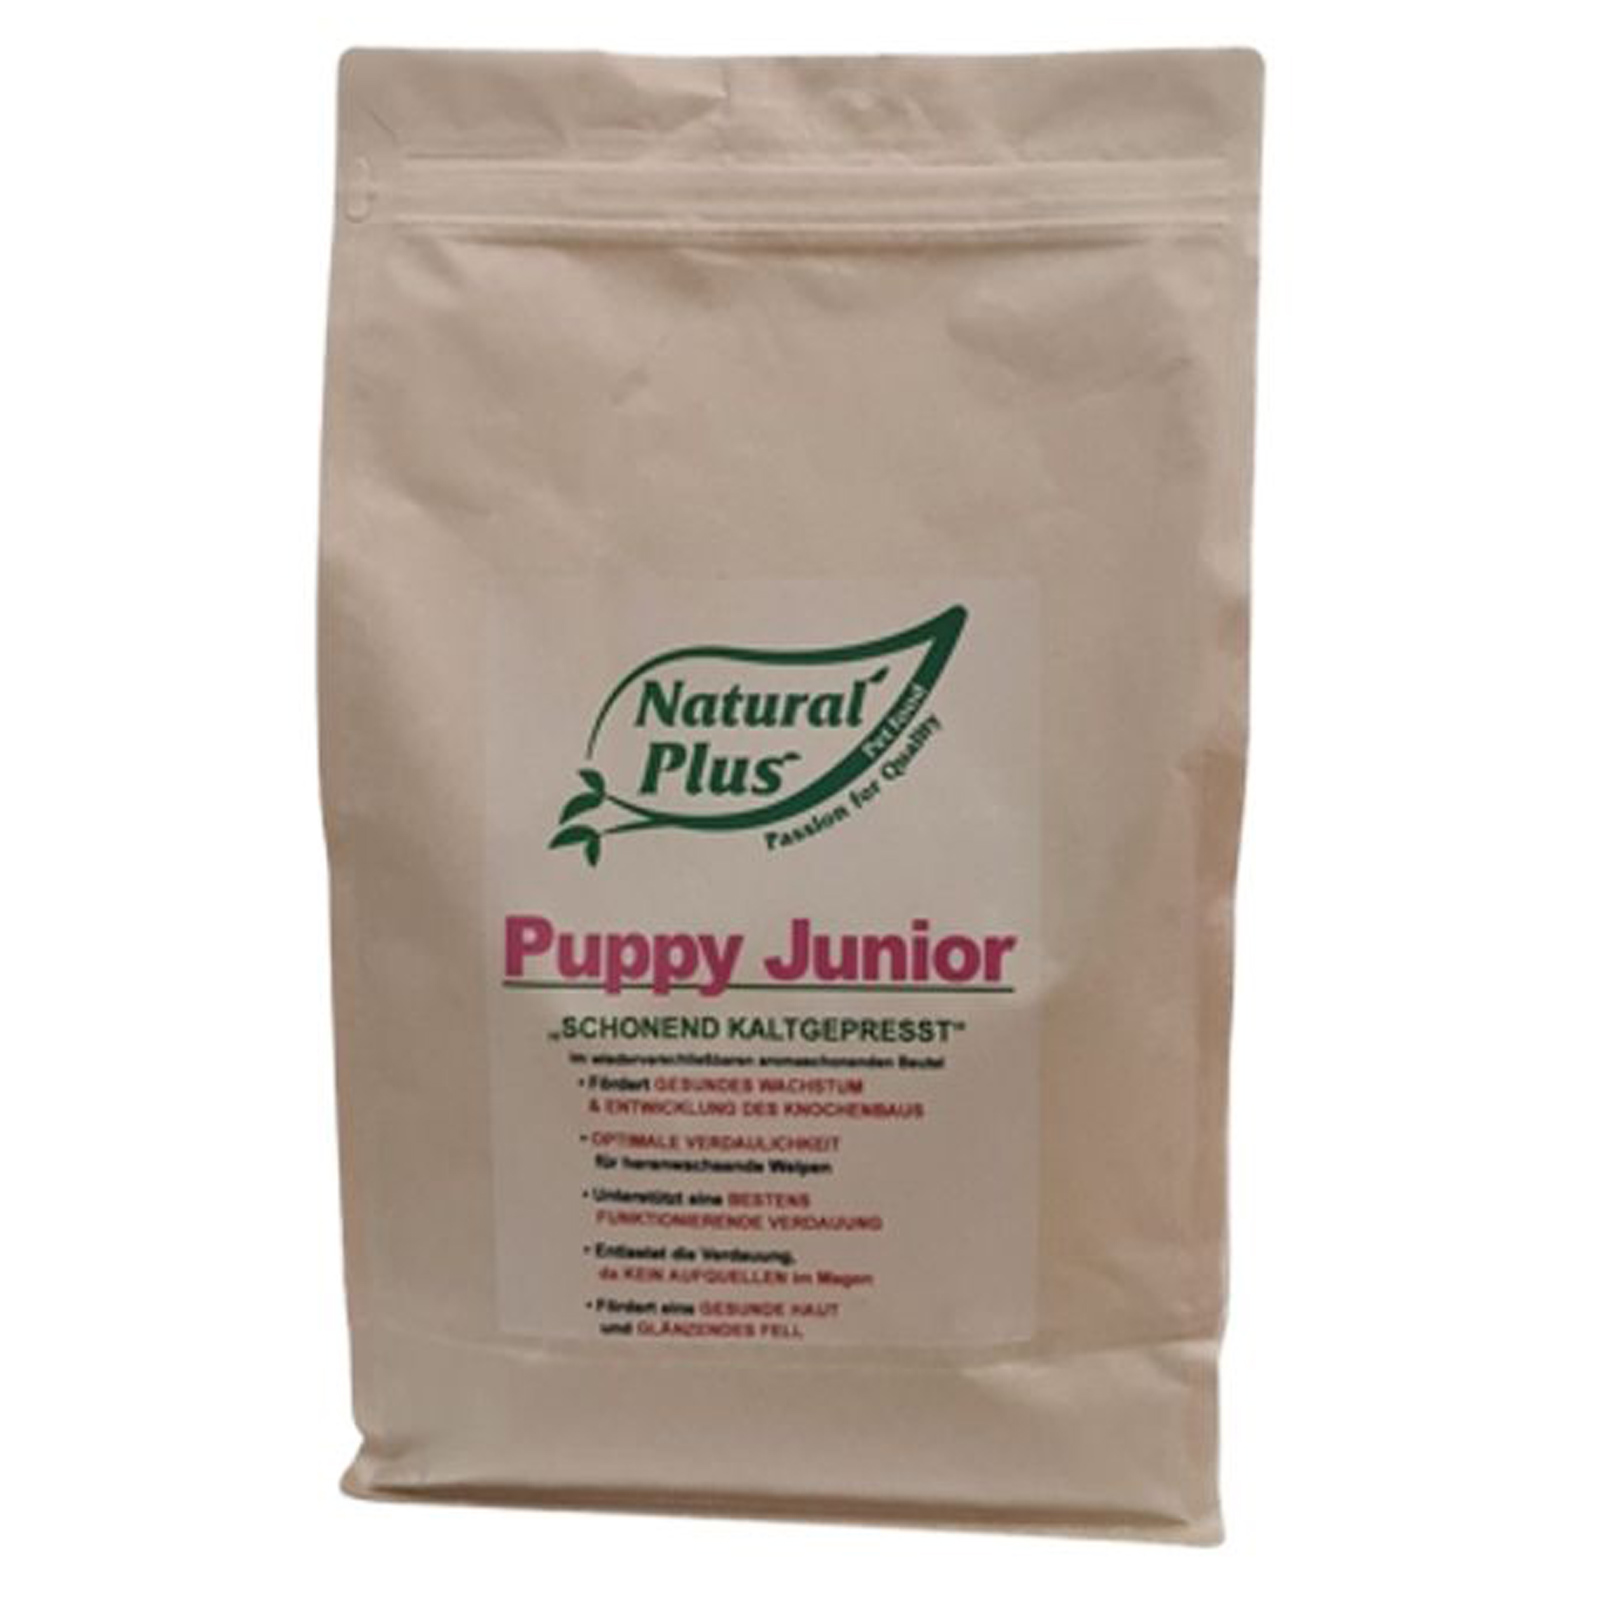 Natural Plus Puppy Junior, kaltgepresst